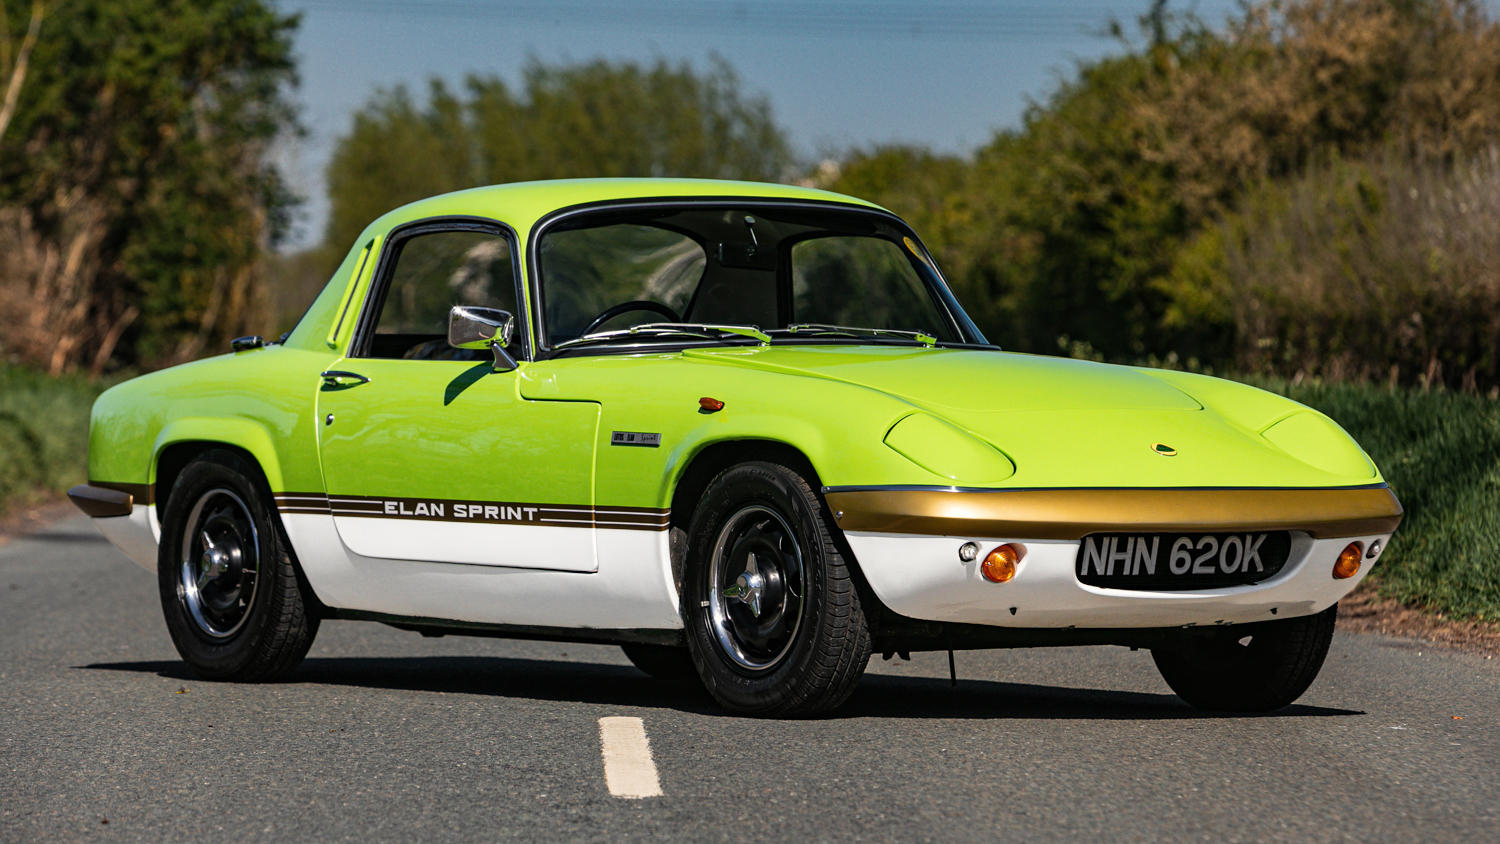 1972 Lotus Elan Sprint - Image 3 of 25